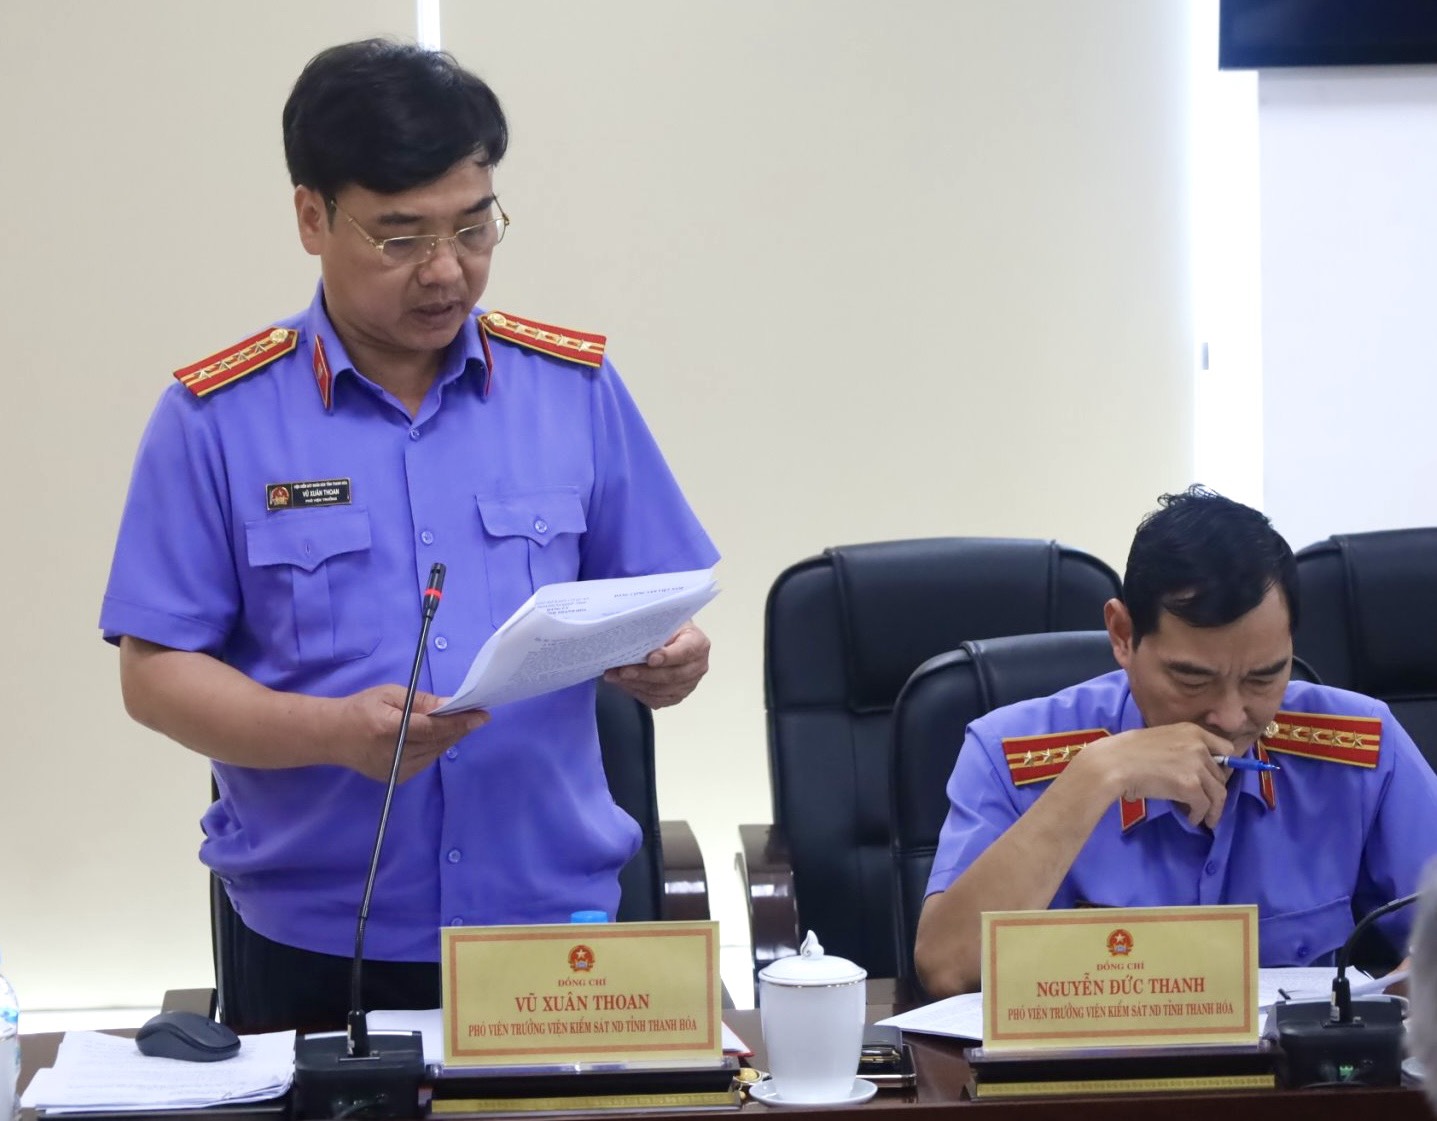 Đ/c Vũ Xuân Thoan, Phó Bí thư đảng ủy, Phó Viện trưởng VKSND tỉnh  trình bày Báo cáo tại buổi làm việc